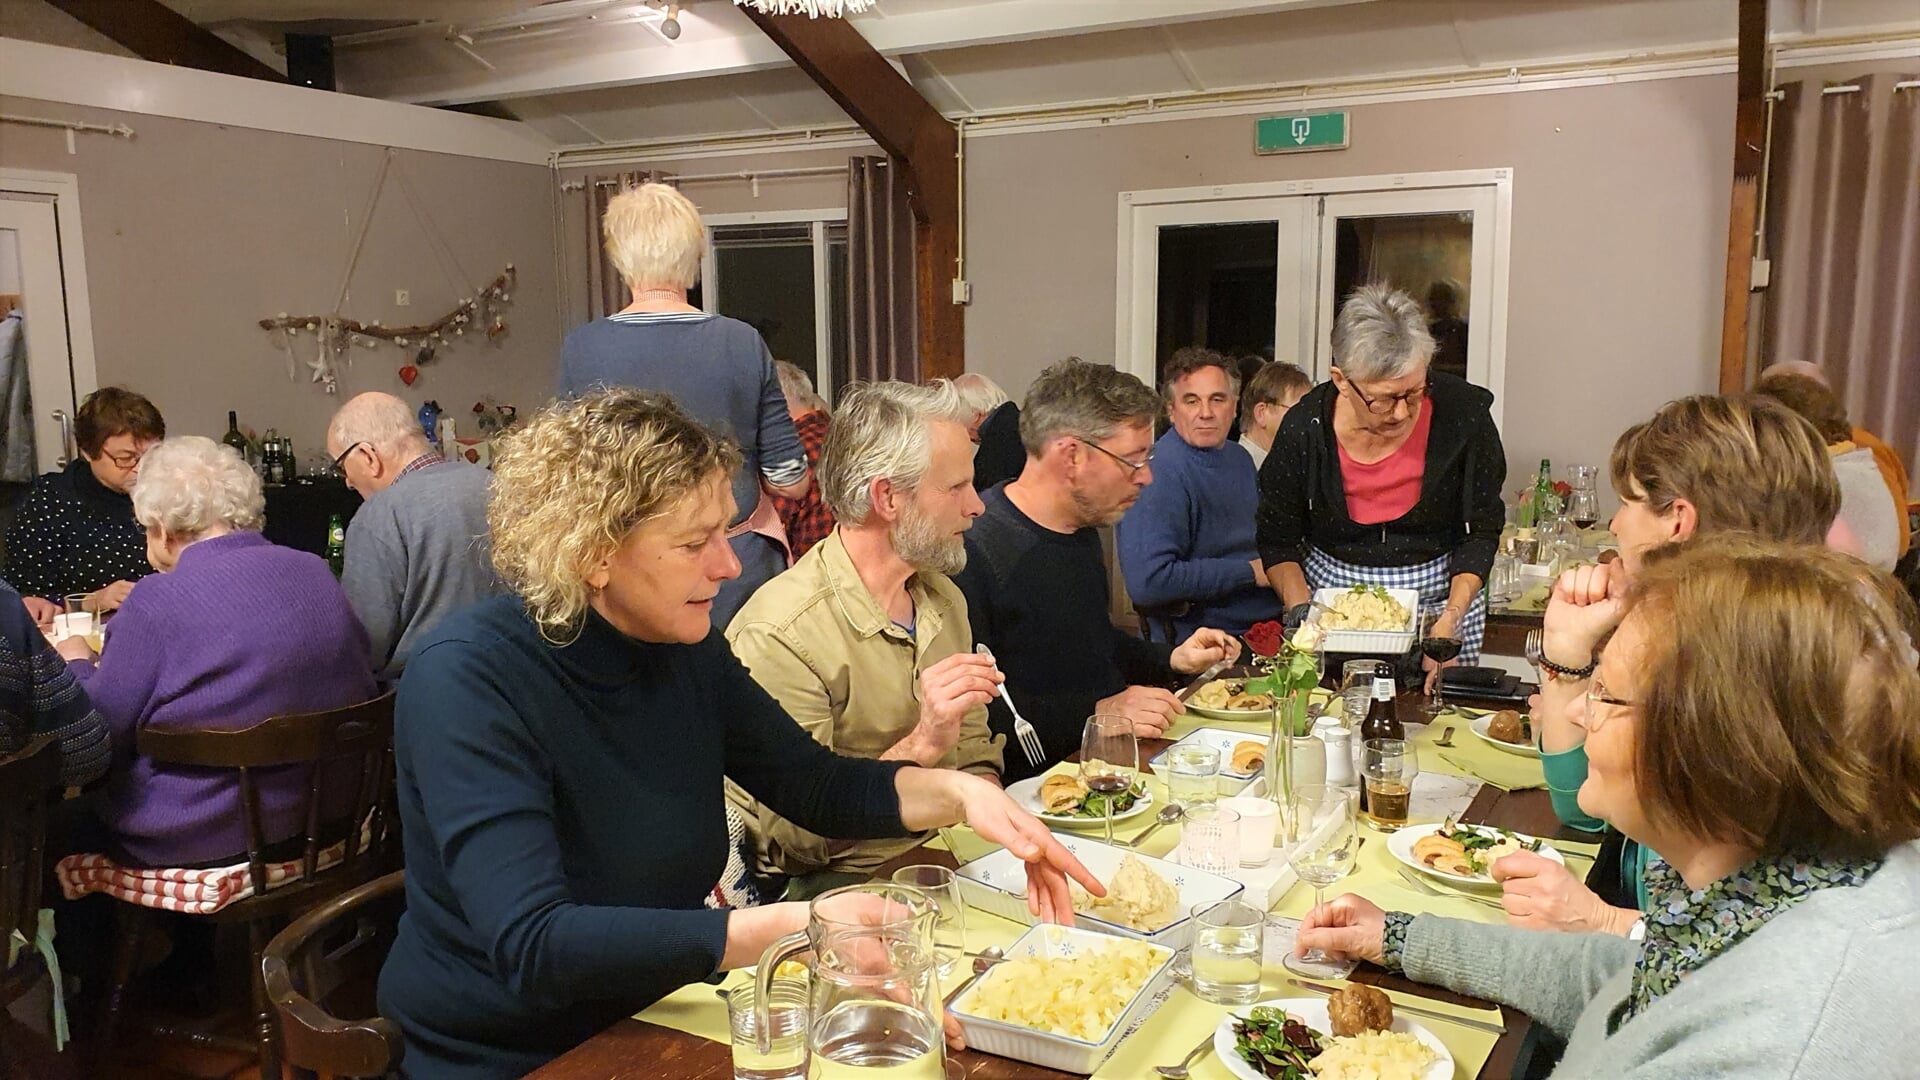 Met dorpsgenoten samen aan tafel gezellig eten in een ongedwongen sfeer, dat is het idee van de Dorpskeuken van Baak. Foto: Alice Rouwhorst